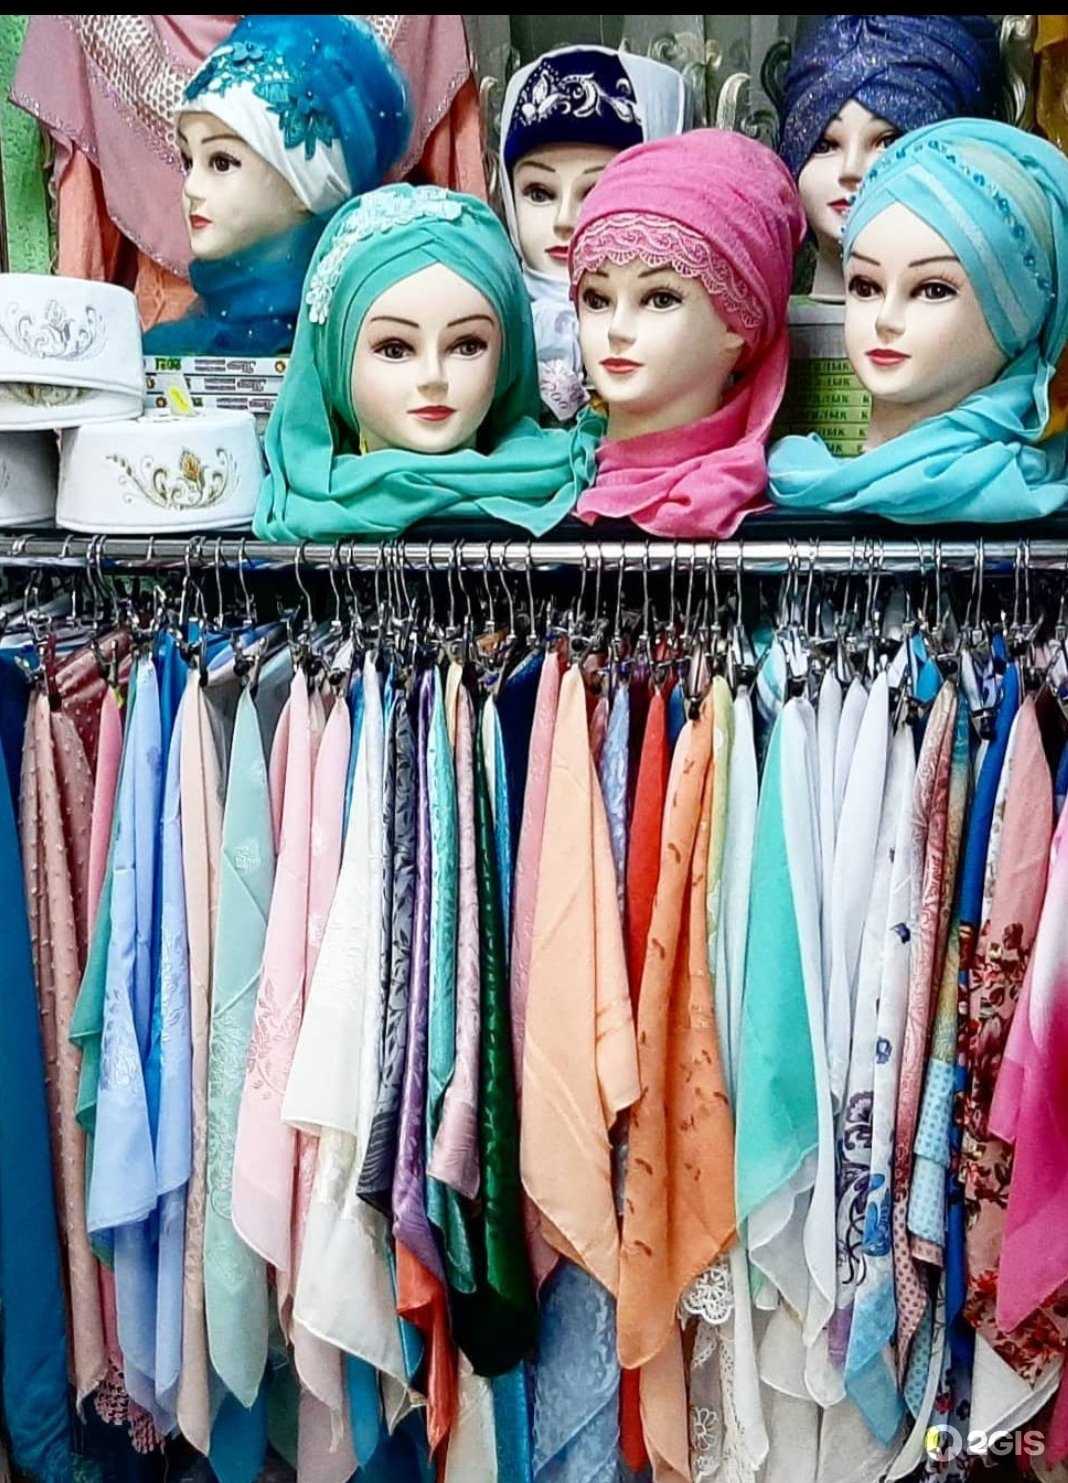 Мусульманская одежда для женщин от известных брендов и дизайнеров, таких как Амира, Сахара, Ирада, Мейденли, Резеда Сулейман и  другие Какие разновидности существуют и как правильно выбрать мусульманский наряд